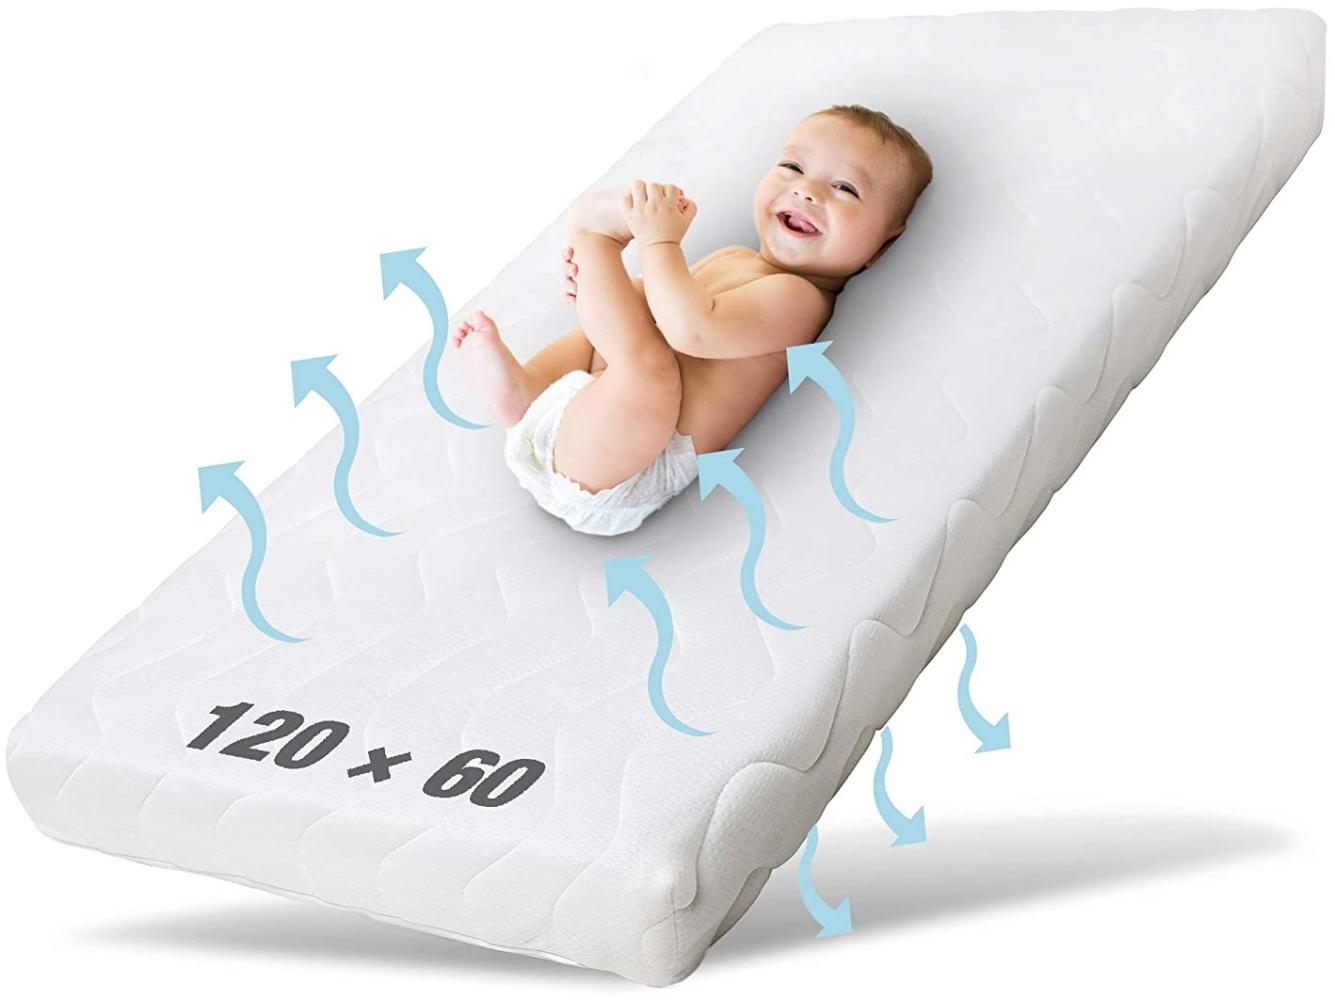 Ehrenkind® Babymatratze Pur | Babymatratze 60x120cm | Matratze 120x60 aus hochwertigem Schaum und Hygienebezug Bild 1